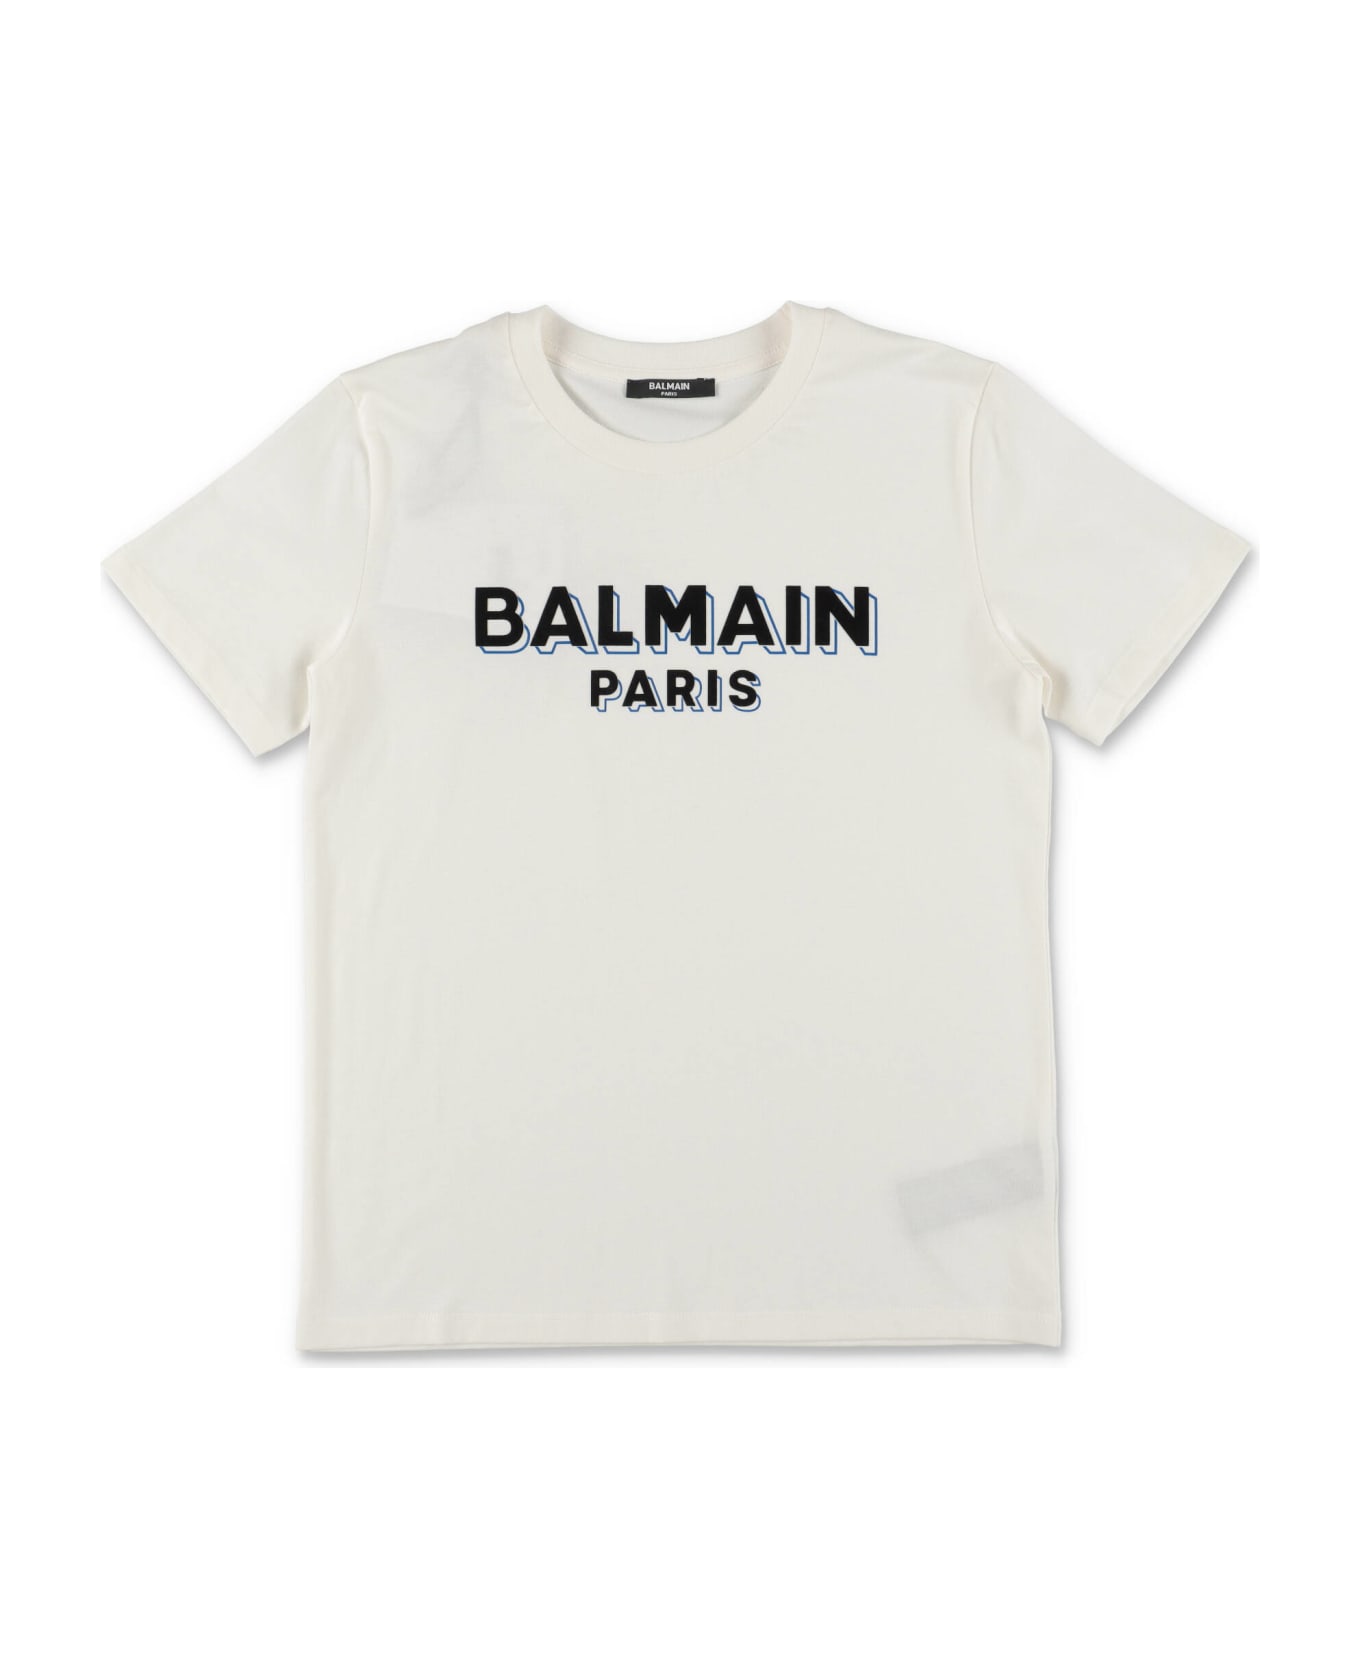 Balmain T-shirt Bianca In Jersey Di Cotone Bambino - Bianco